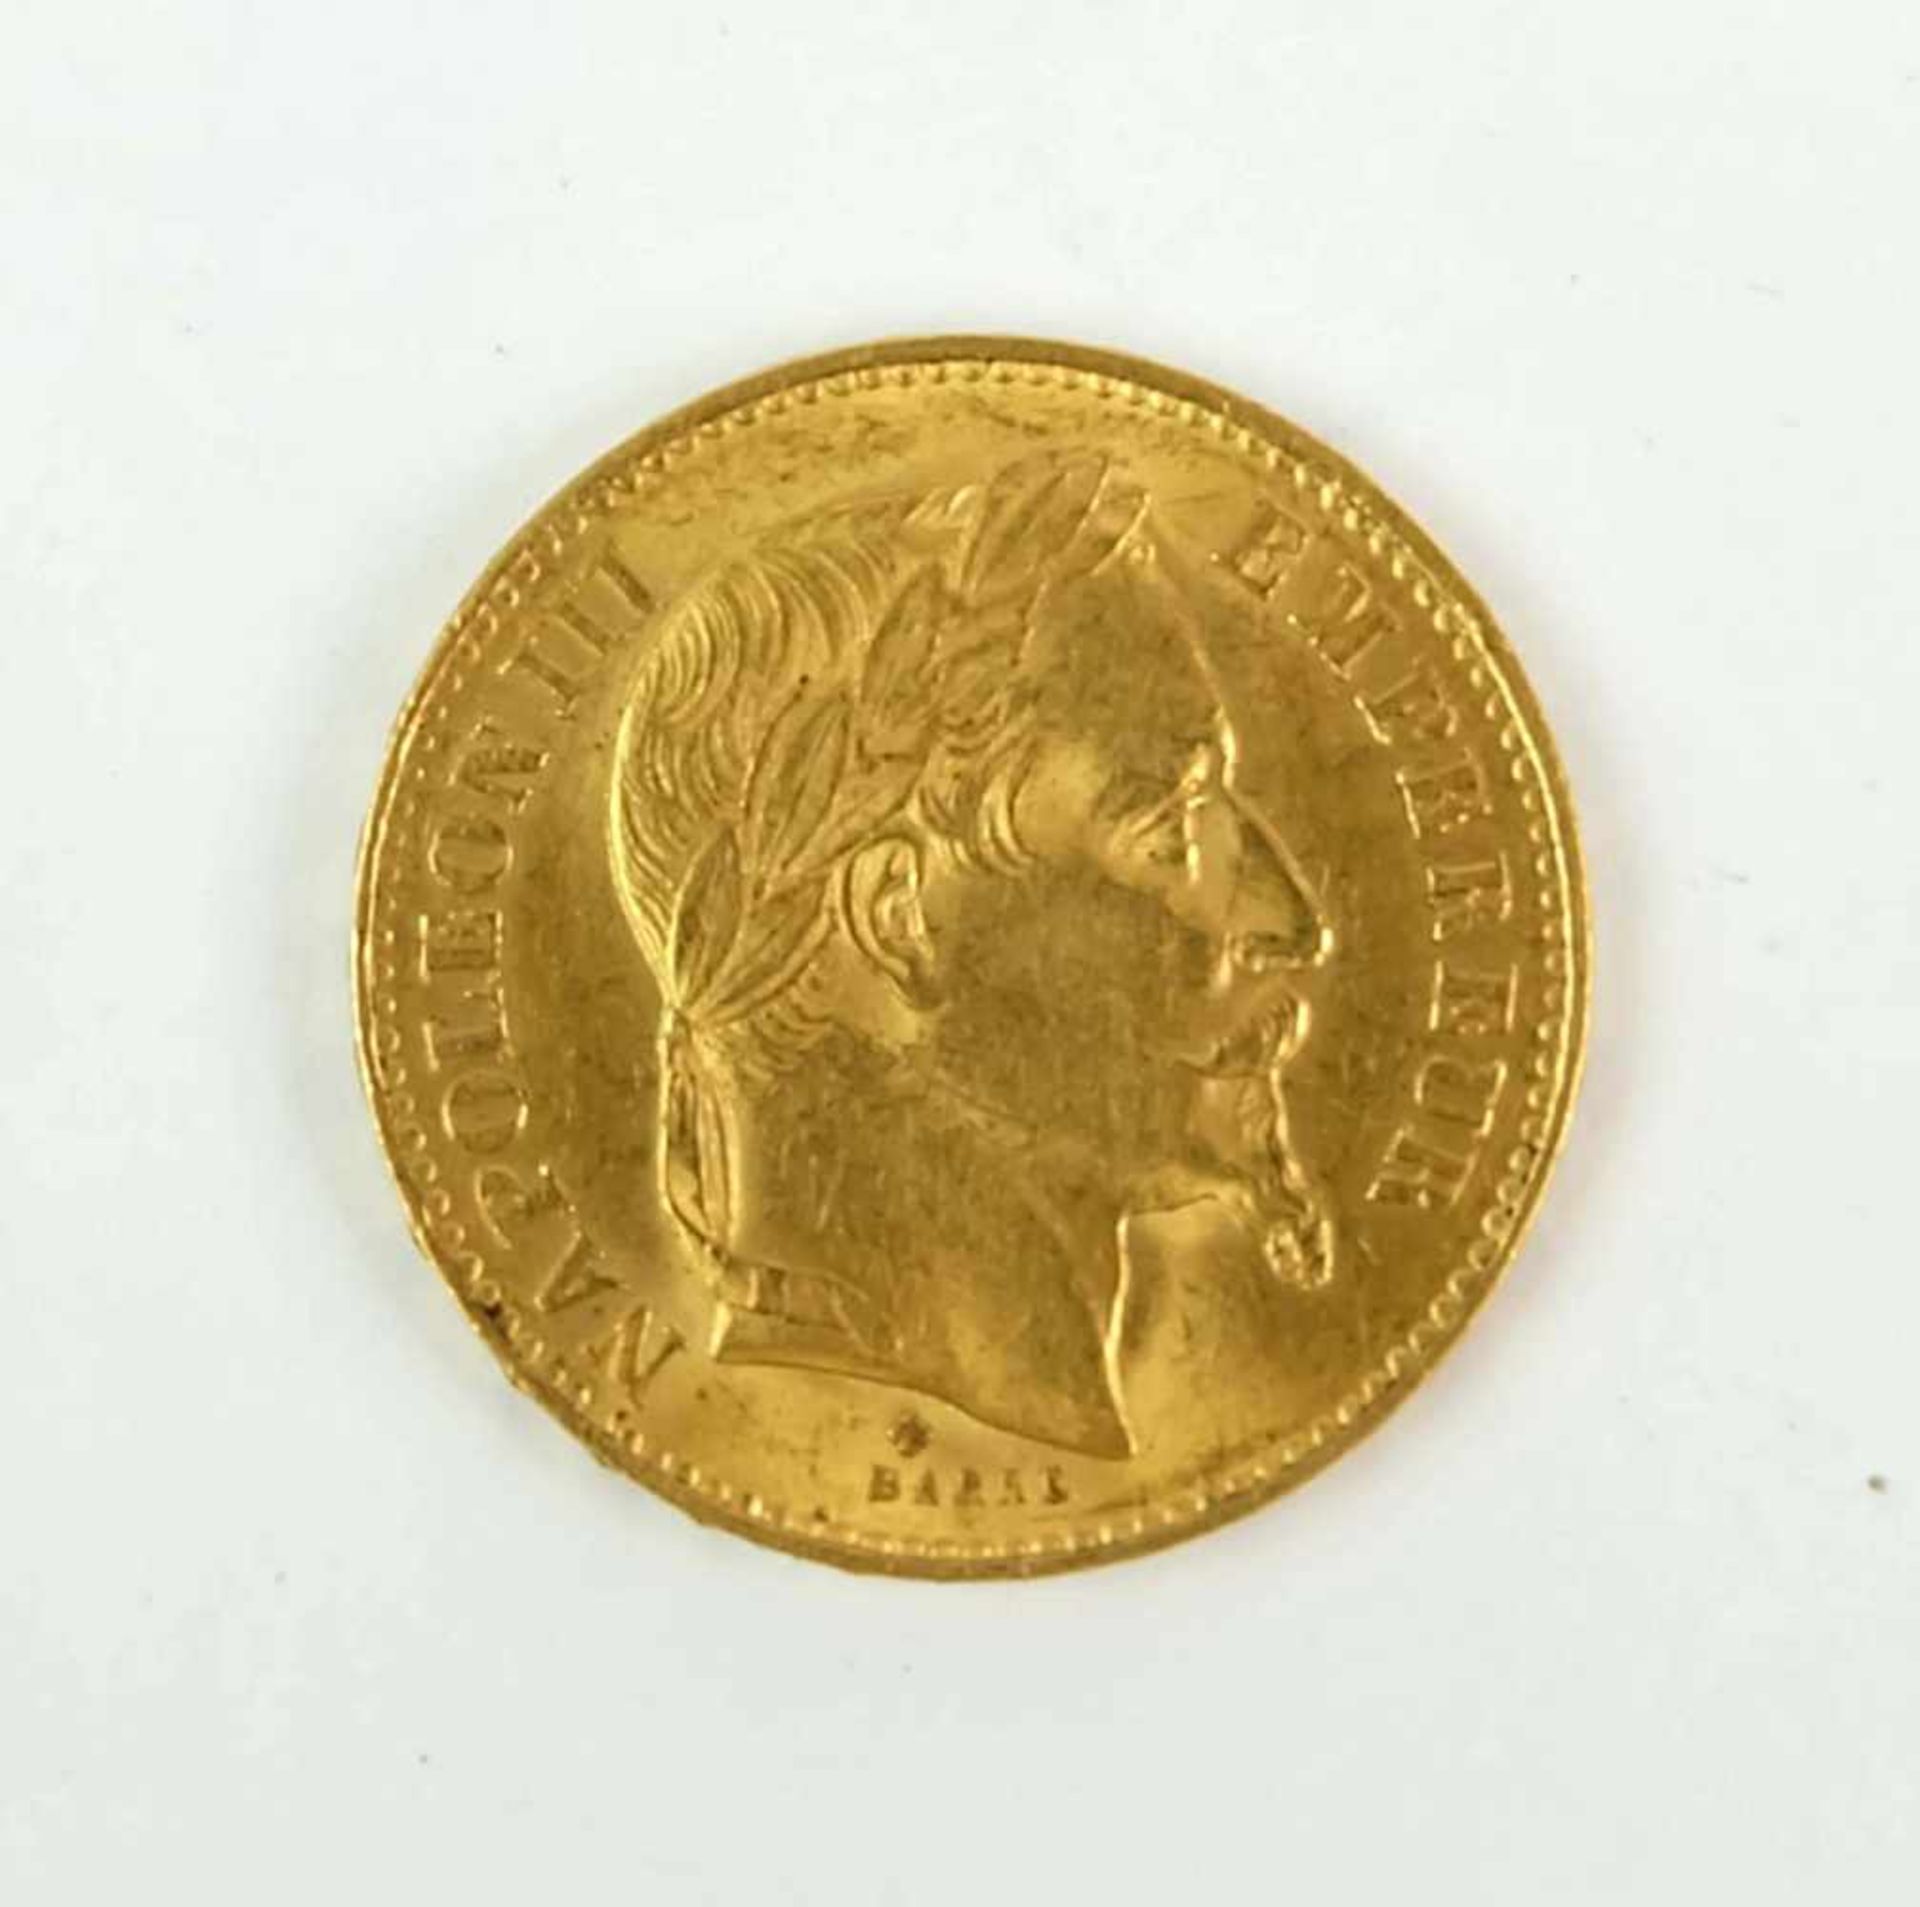 Frankreich, Napoleon III., 20 Francs, 1868, ca. 6,45g 900er-Gold - Image 2 of 3